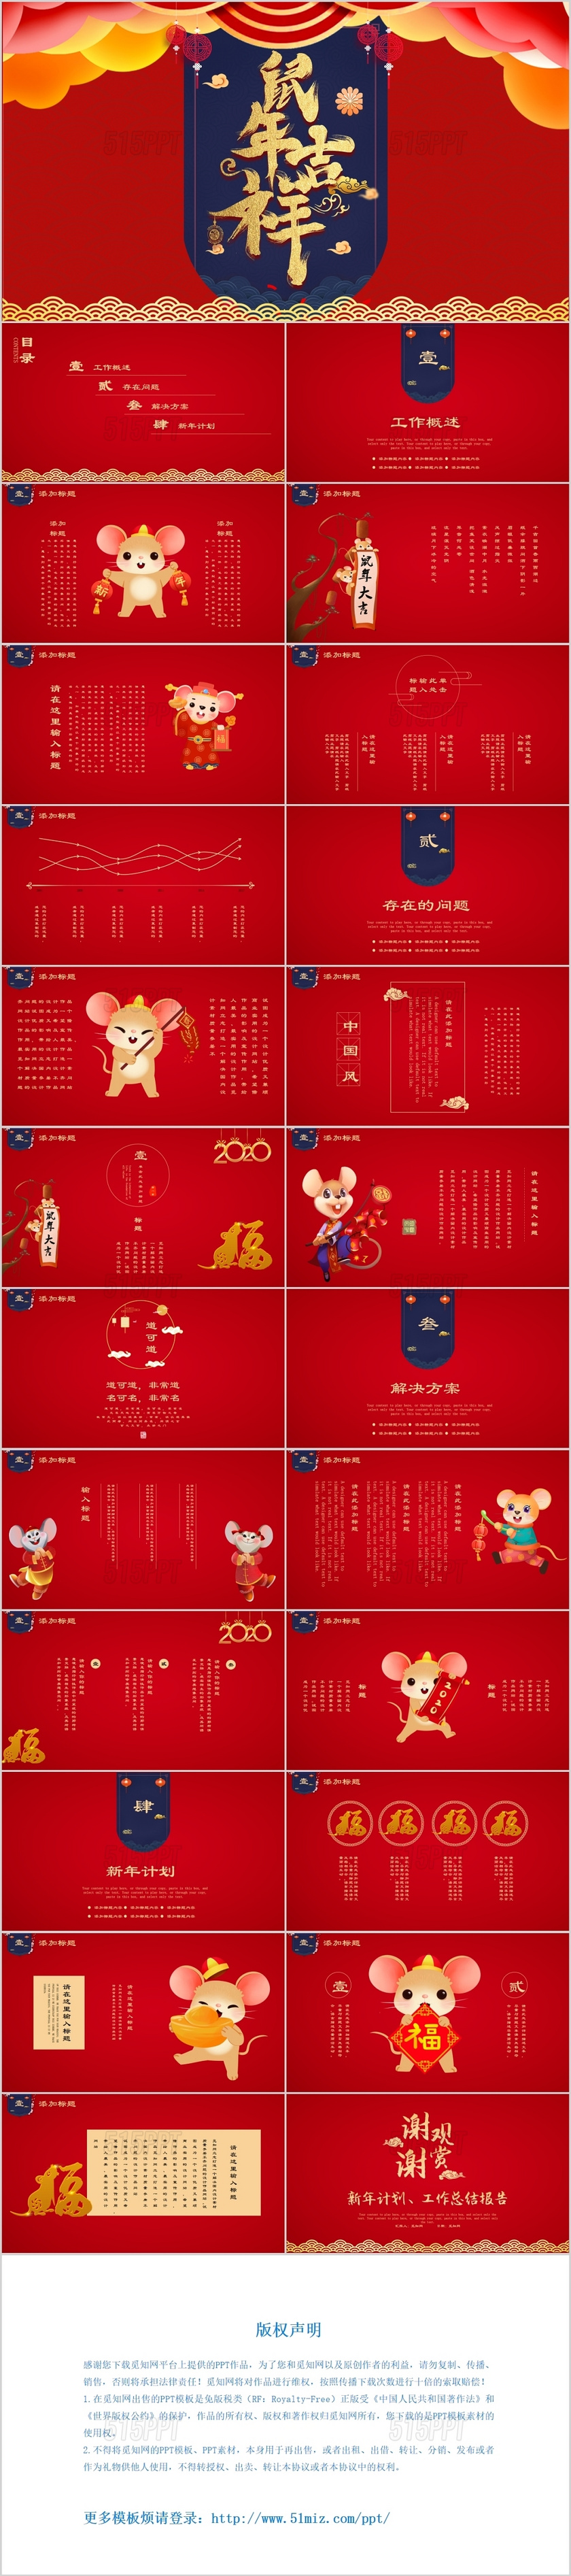 红色大气鼠年吉祥2020年节日庆典ppt传统动态PPT